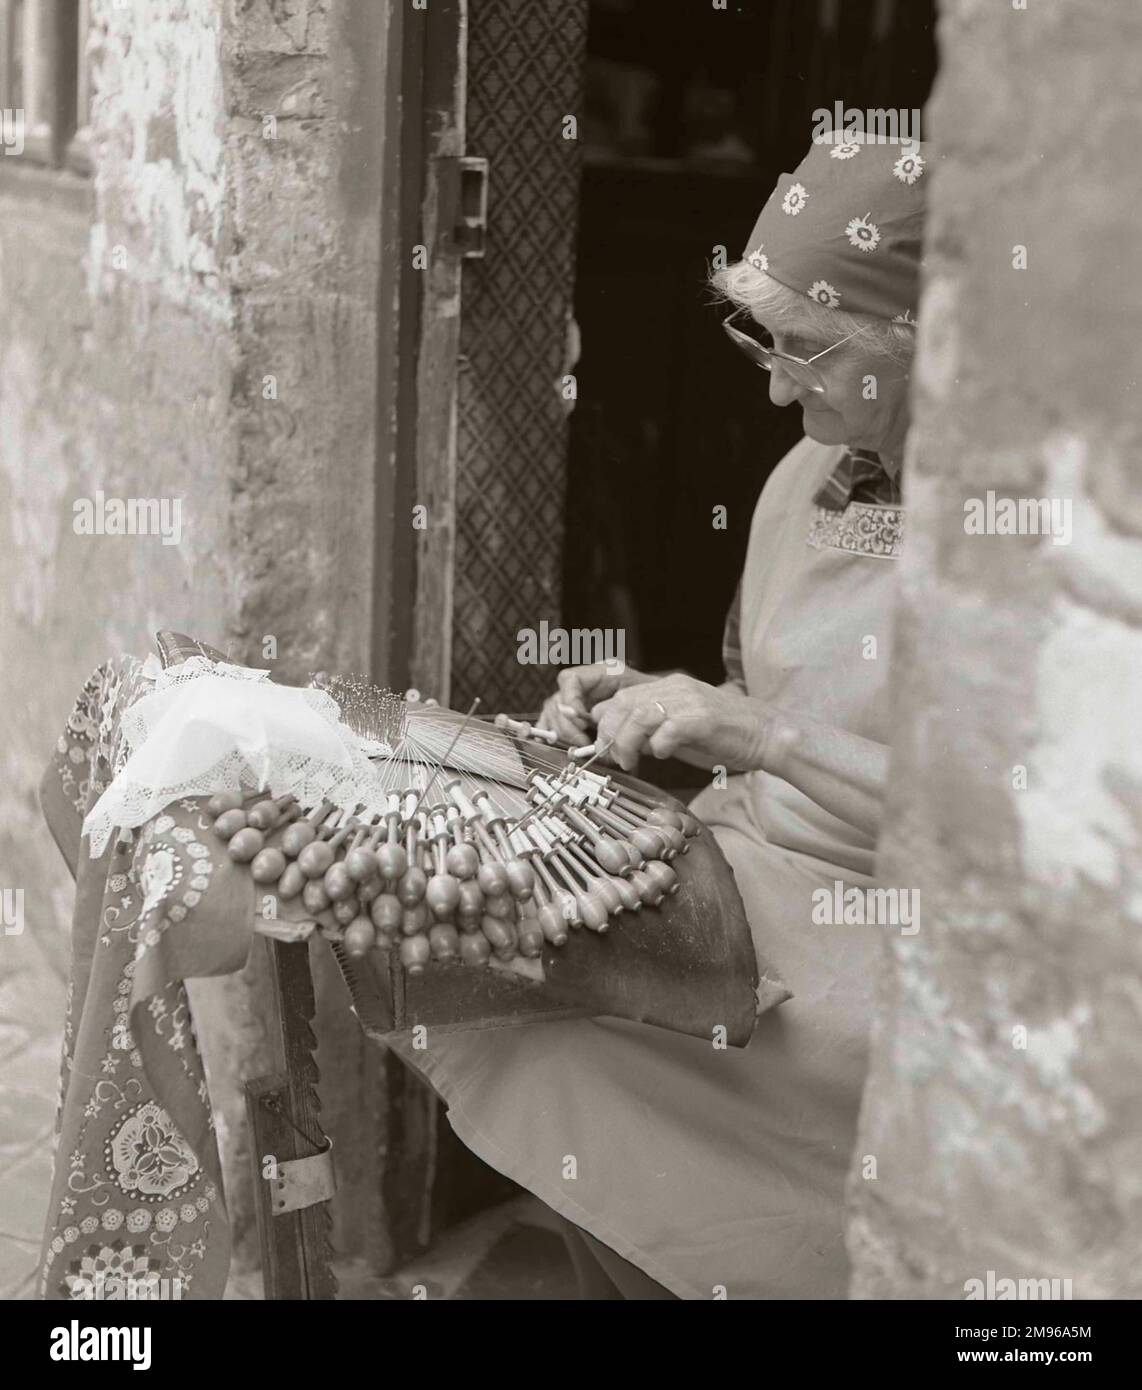 Eine ältere Frau, die in der offenen Tür ihres Hauses Spitzen herstellt, mit einer großen Anzahl von Spulen. Stockfoto